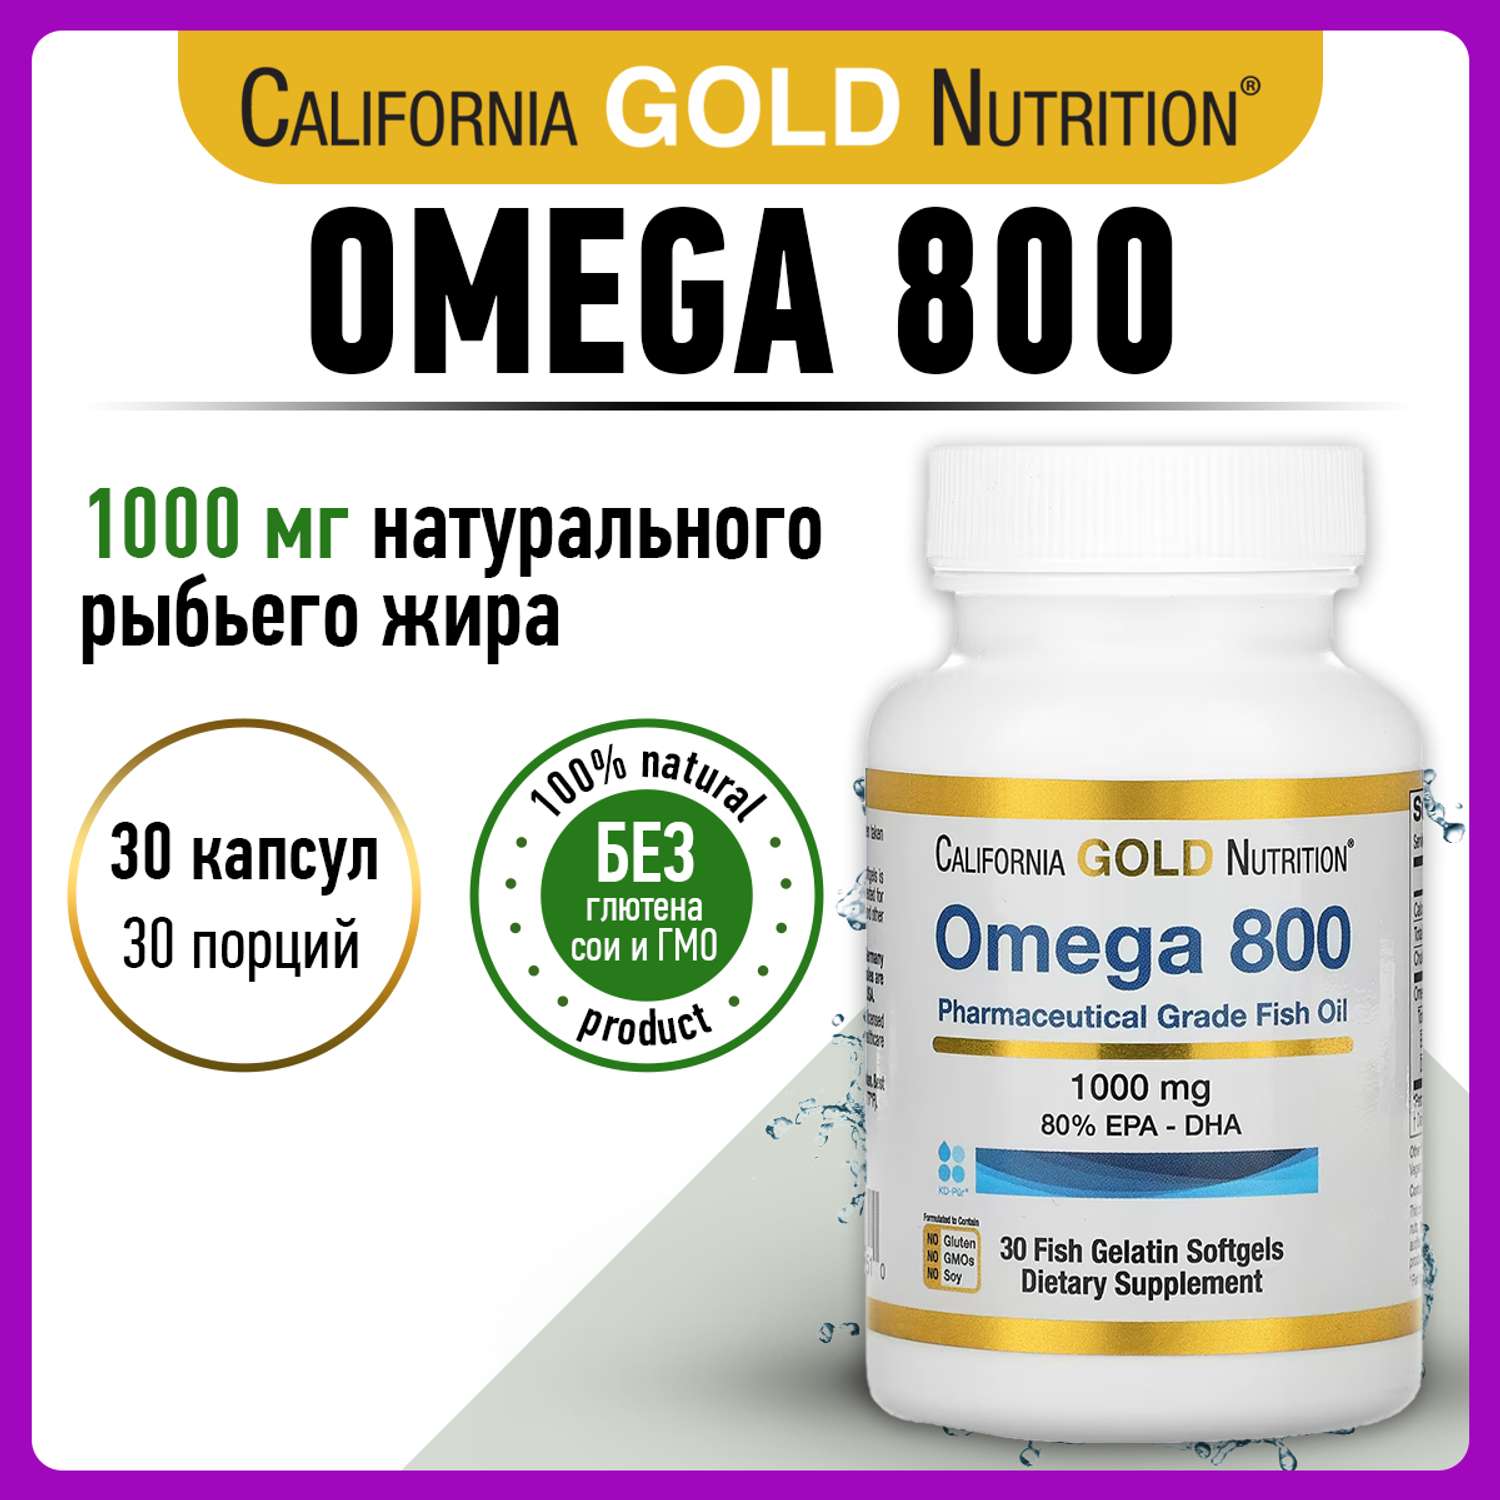 Омега 3 California Gold Nutrition 800 1000mg EPA-DHA 30 капсул - фото 1